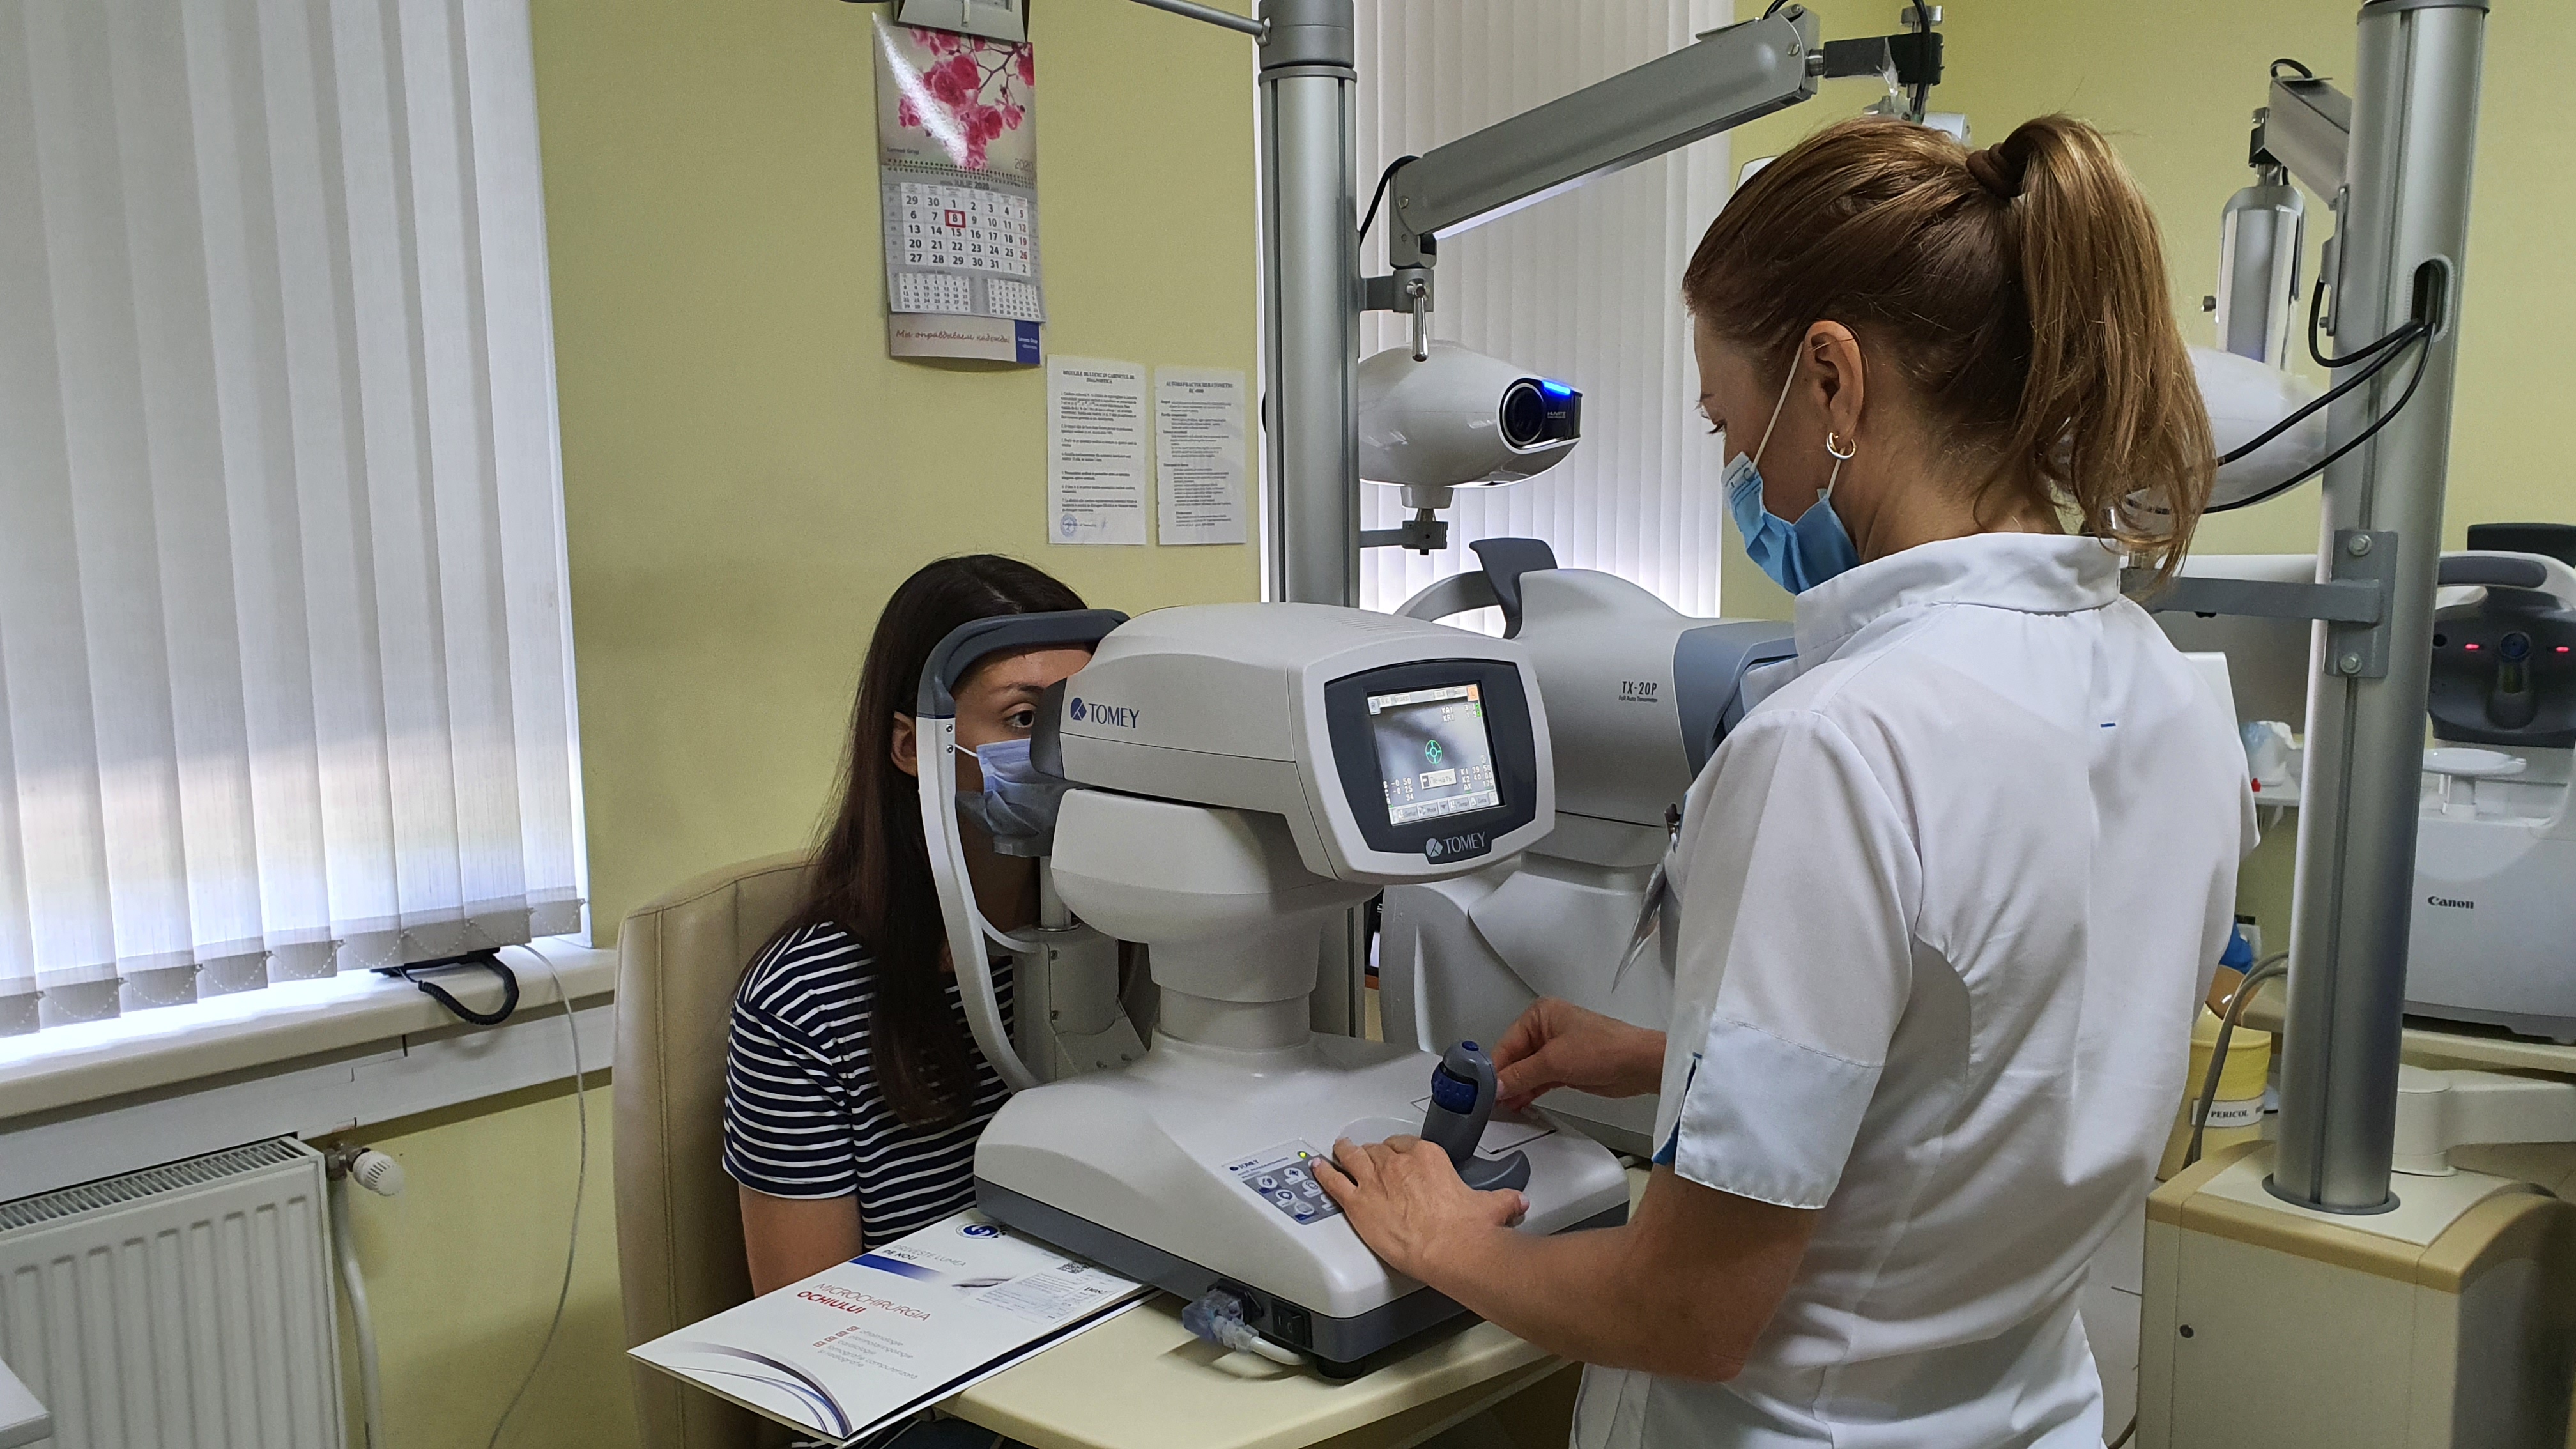 Turcii deschid in Bucuresti cel mai mare spital oftalmologic din regiune cu 20 mil. dolari